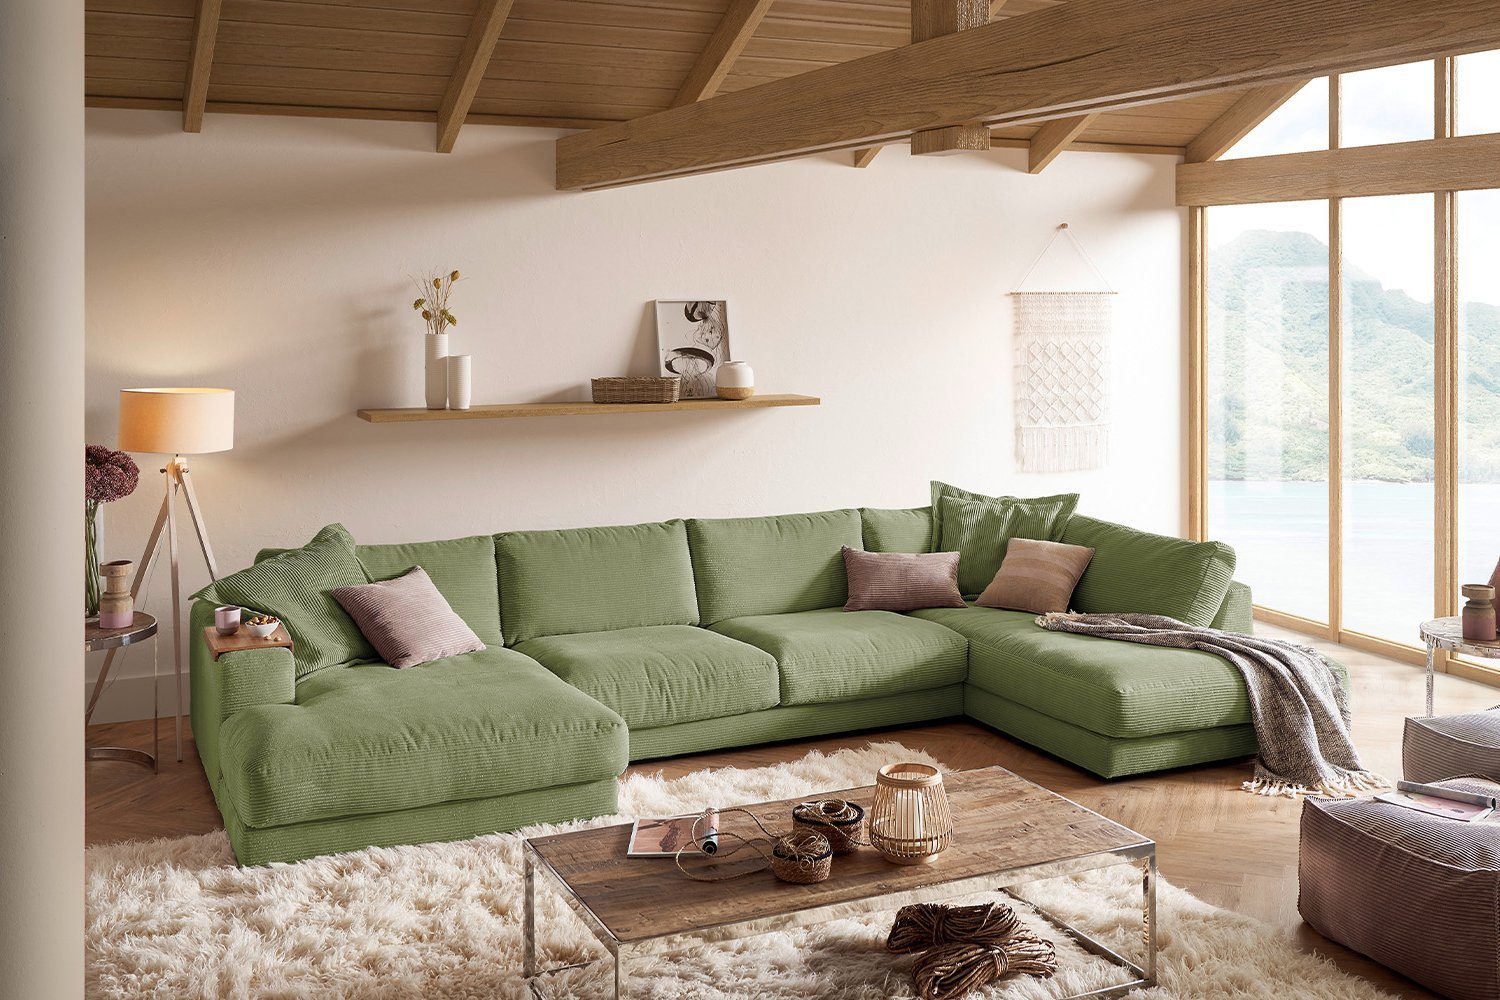 KAWOLA Wohnlandschaft MADELINE, Sofa od. versch. olivgrün U-Form Cord, rechts Longchair Farben links